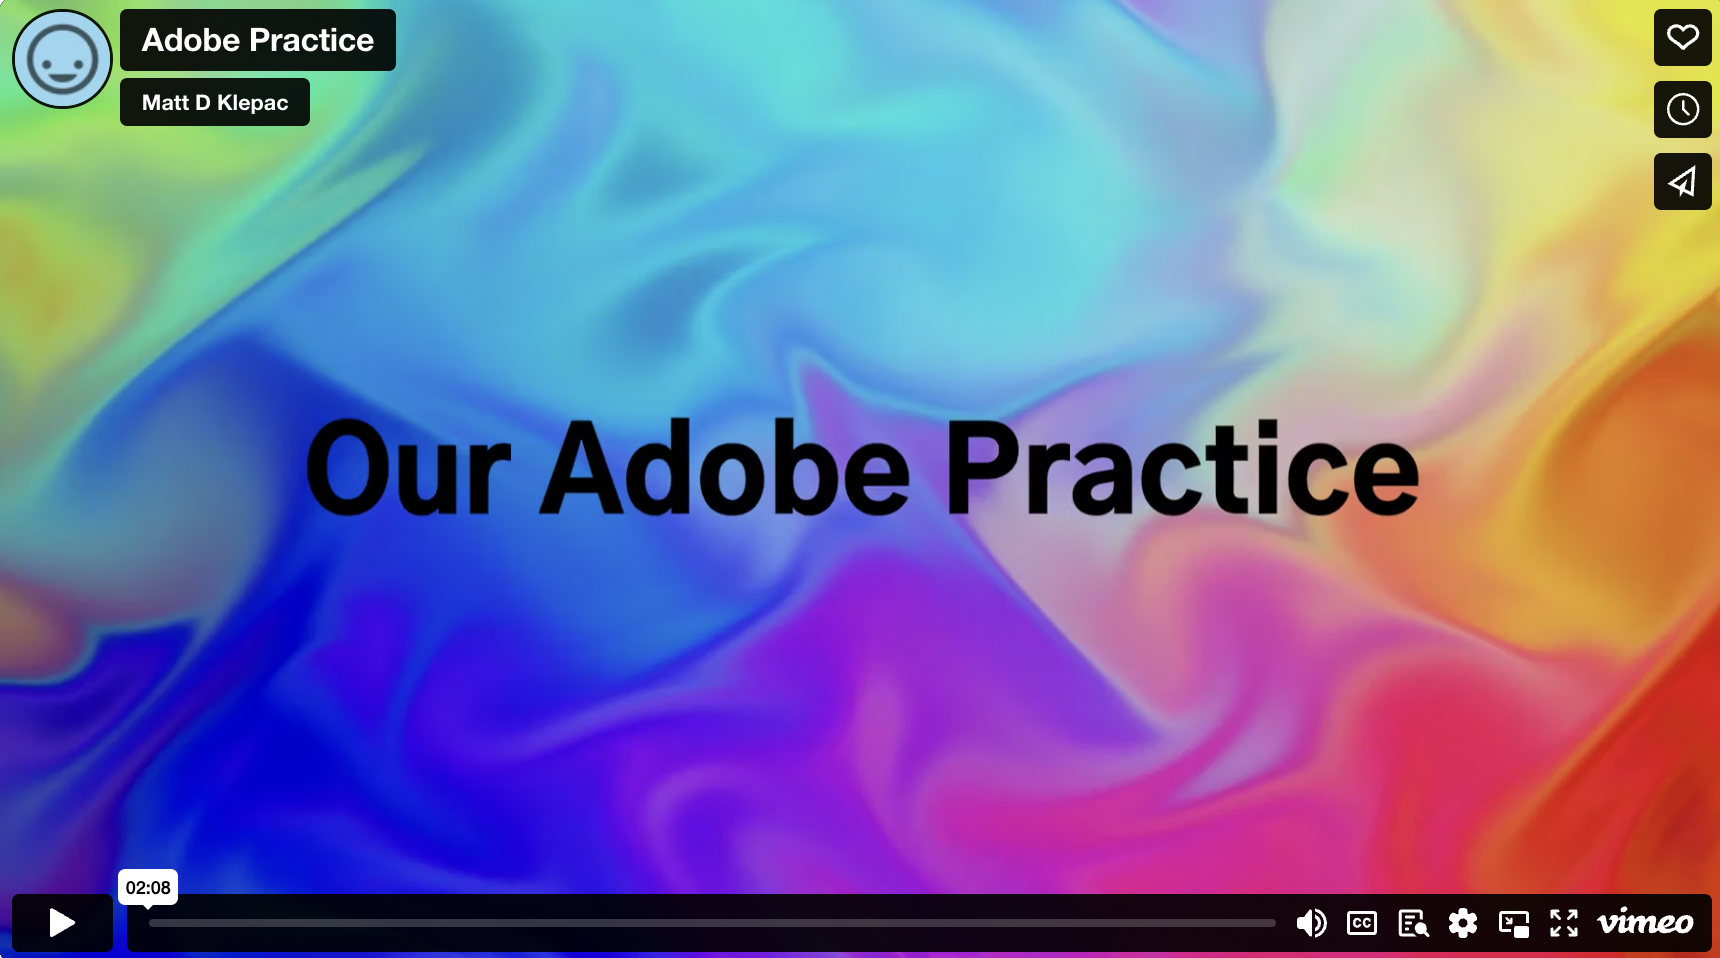 Adobe Practice